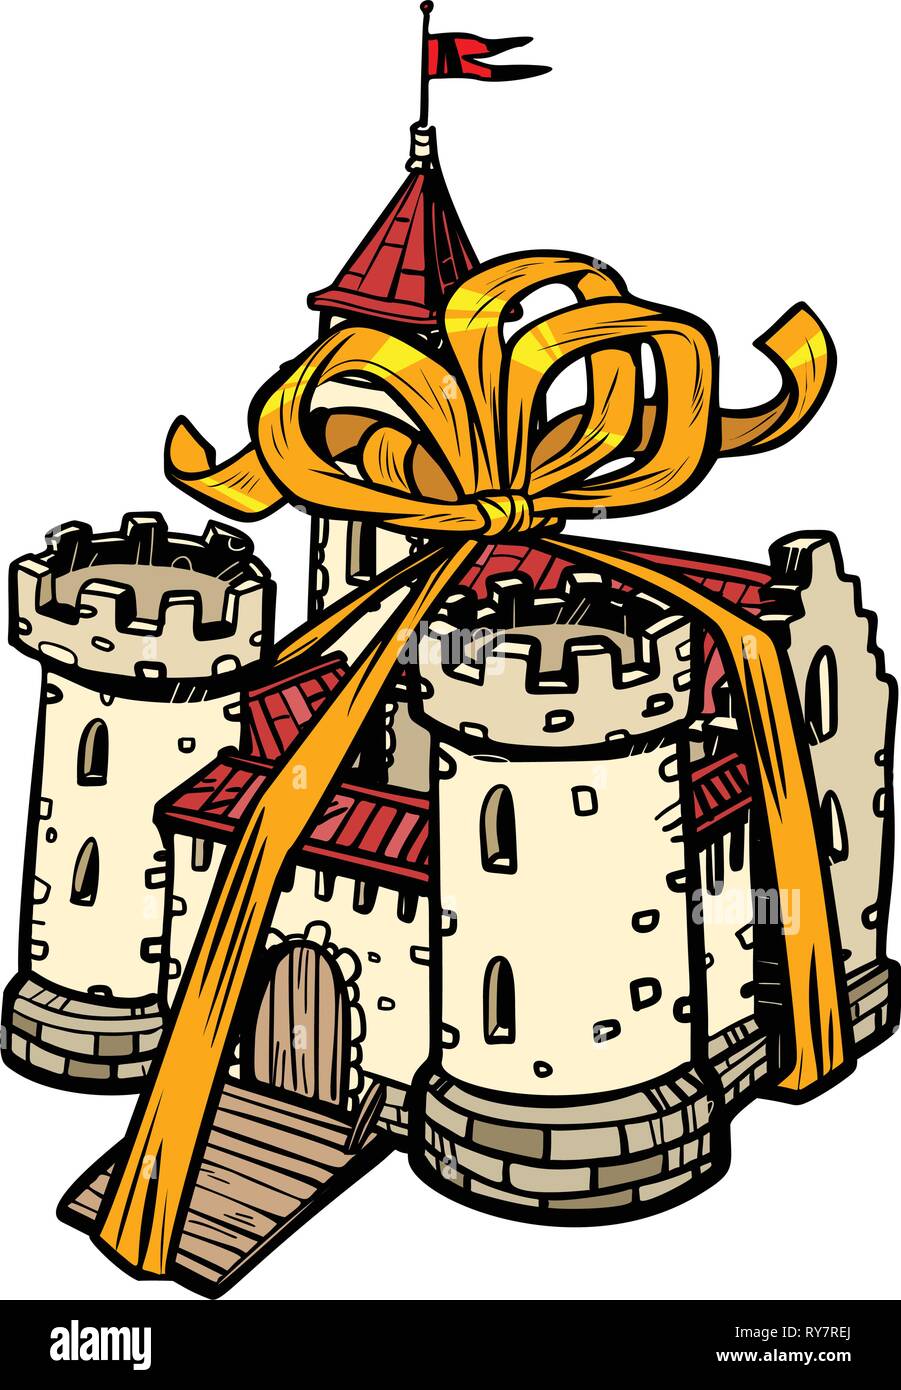 Ruban cadeau château médiéval, royaume des fées. isoler sur fond blanc Illustration de Vecteur